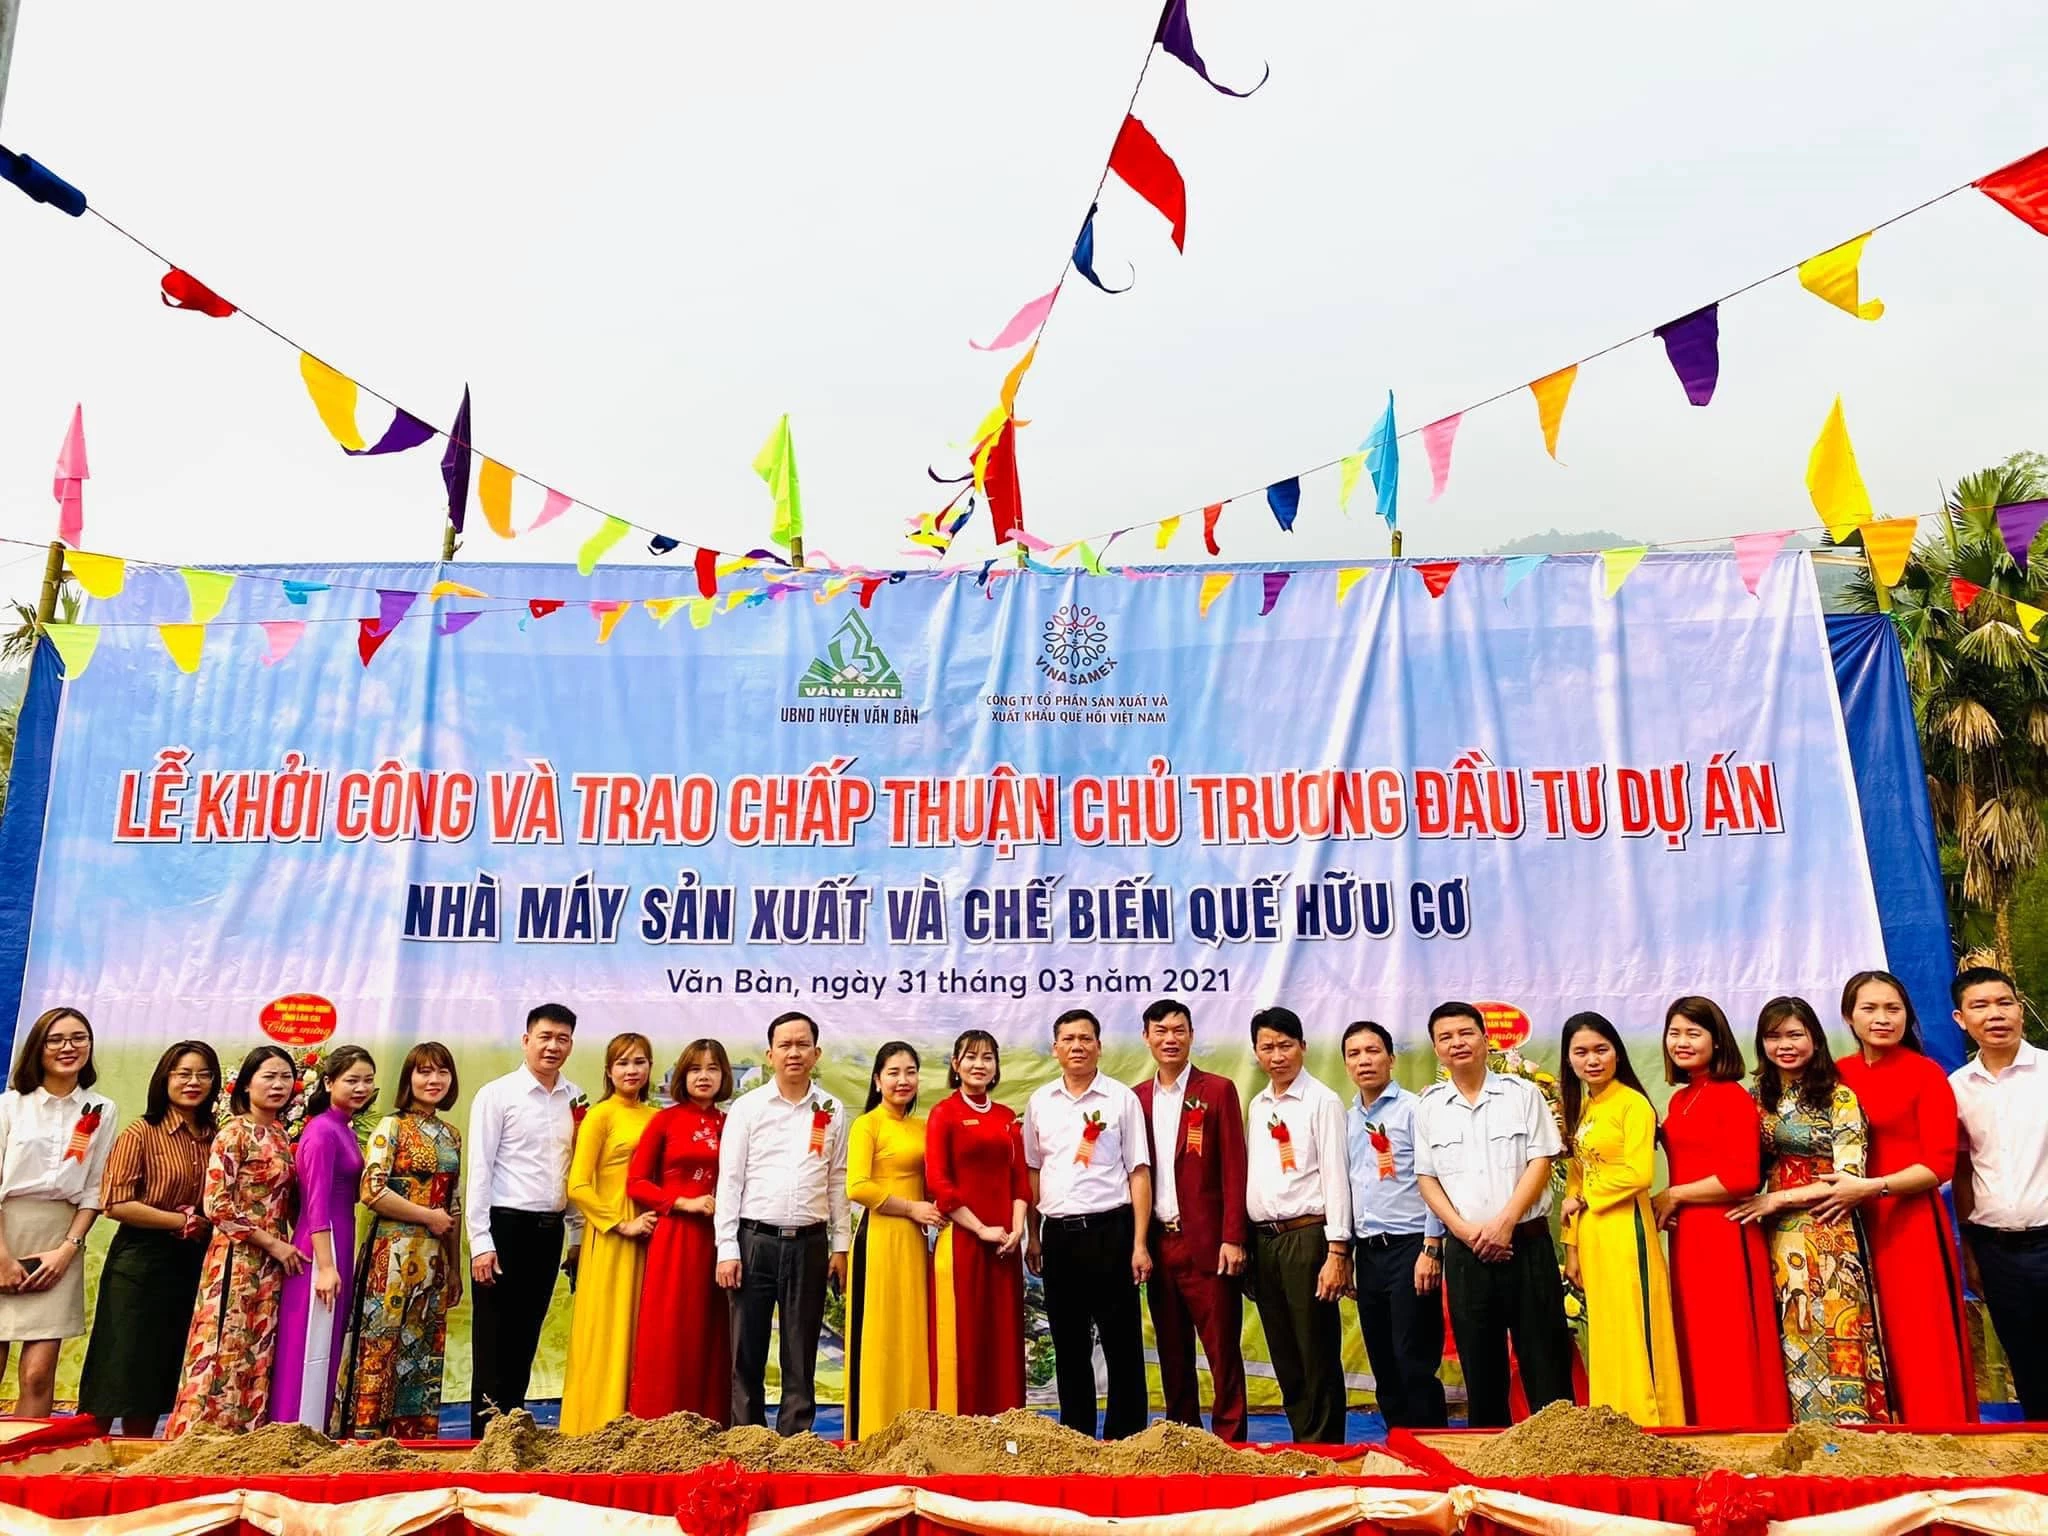 Nhà máy chế biến tại Văn Bàn, Lào Cai sẽ mang đến nhiều cơ hội việc làm cho người dân địa phương